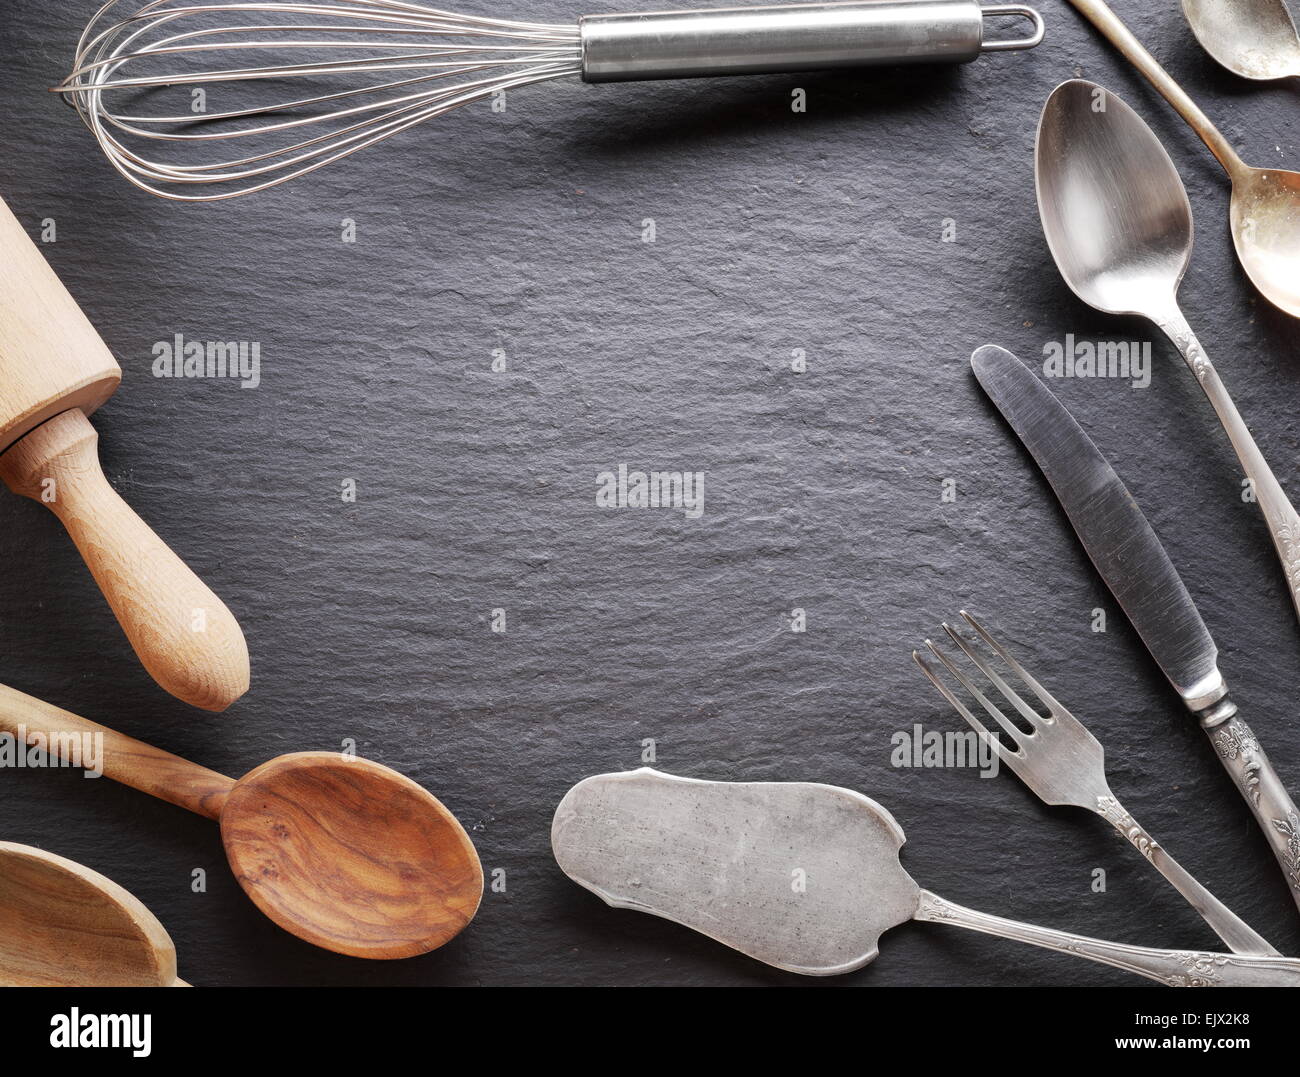 Ustensiles de cuisine sur un fond gris foncé. Banque D'Images